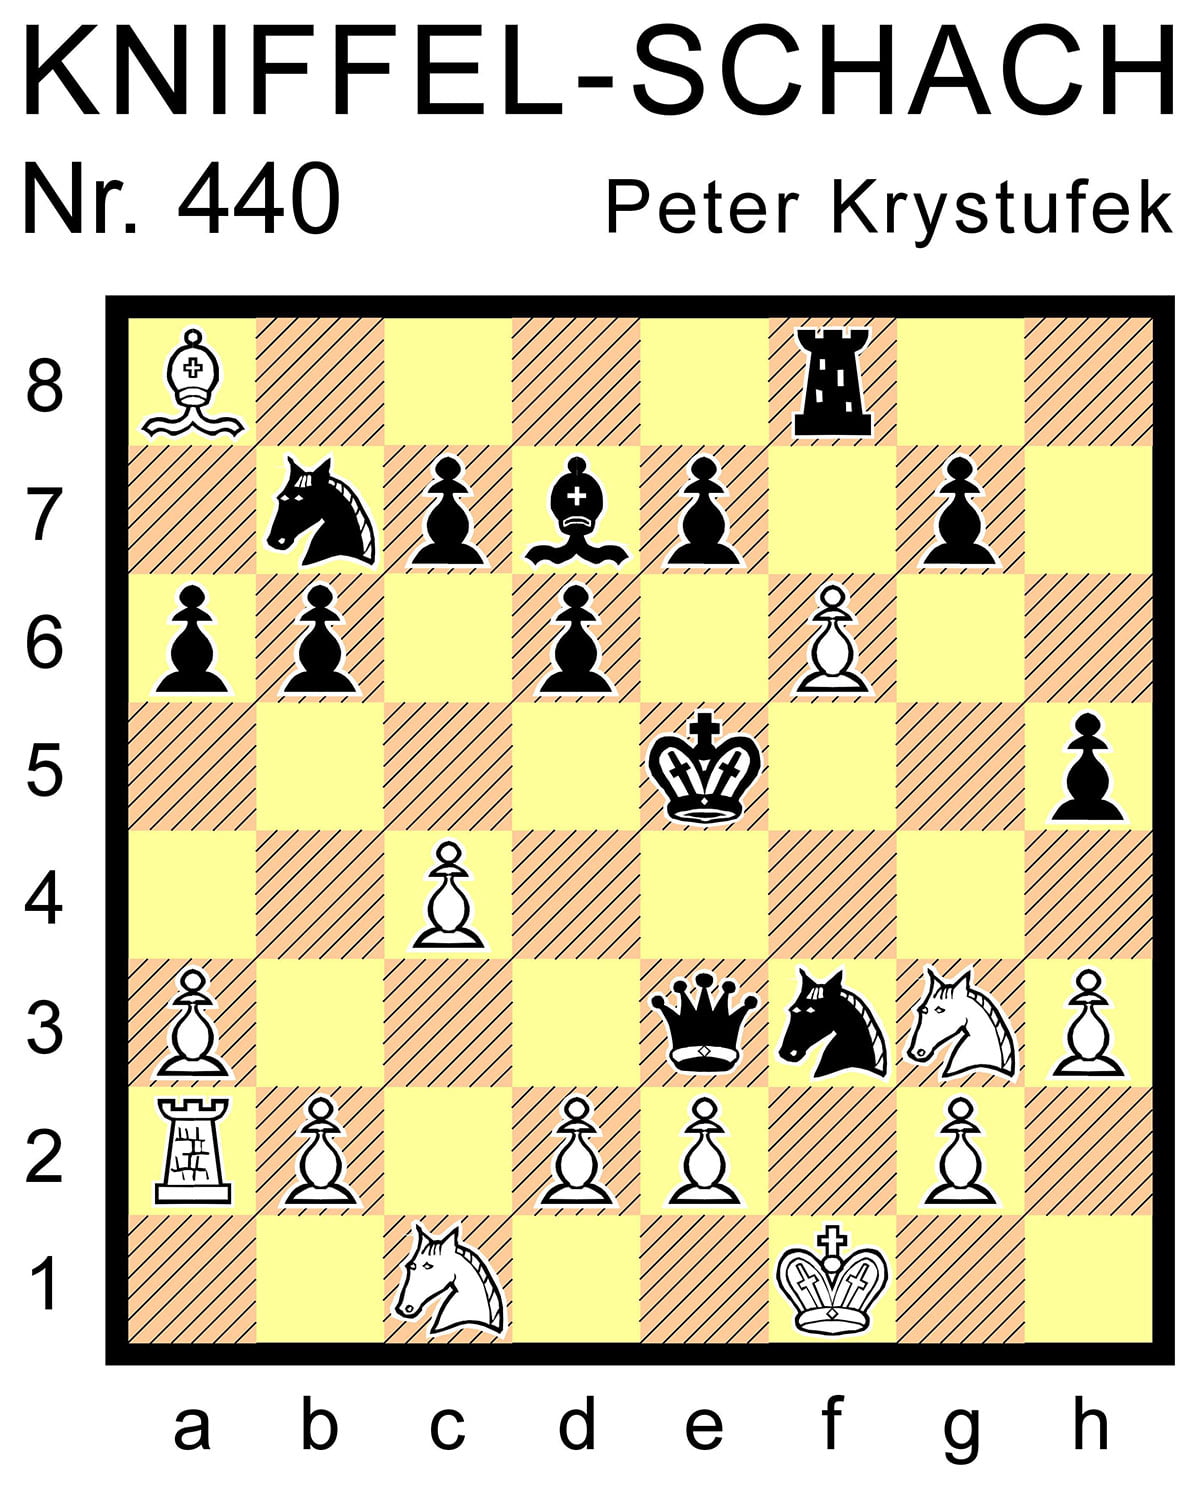 Kniffel-Schach Nr. 440